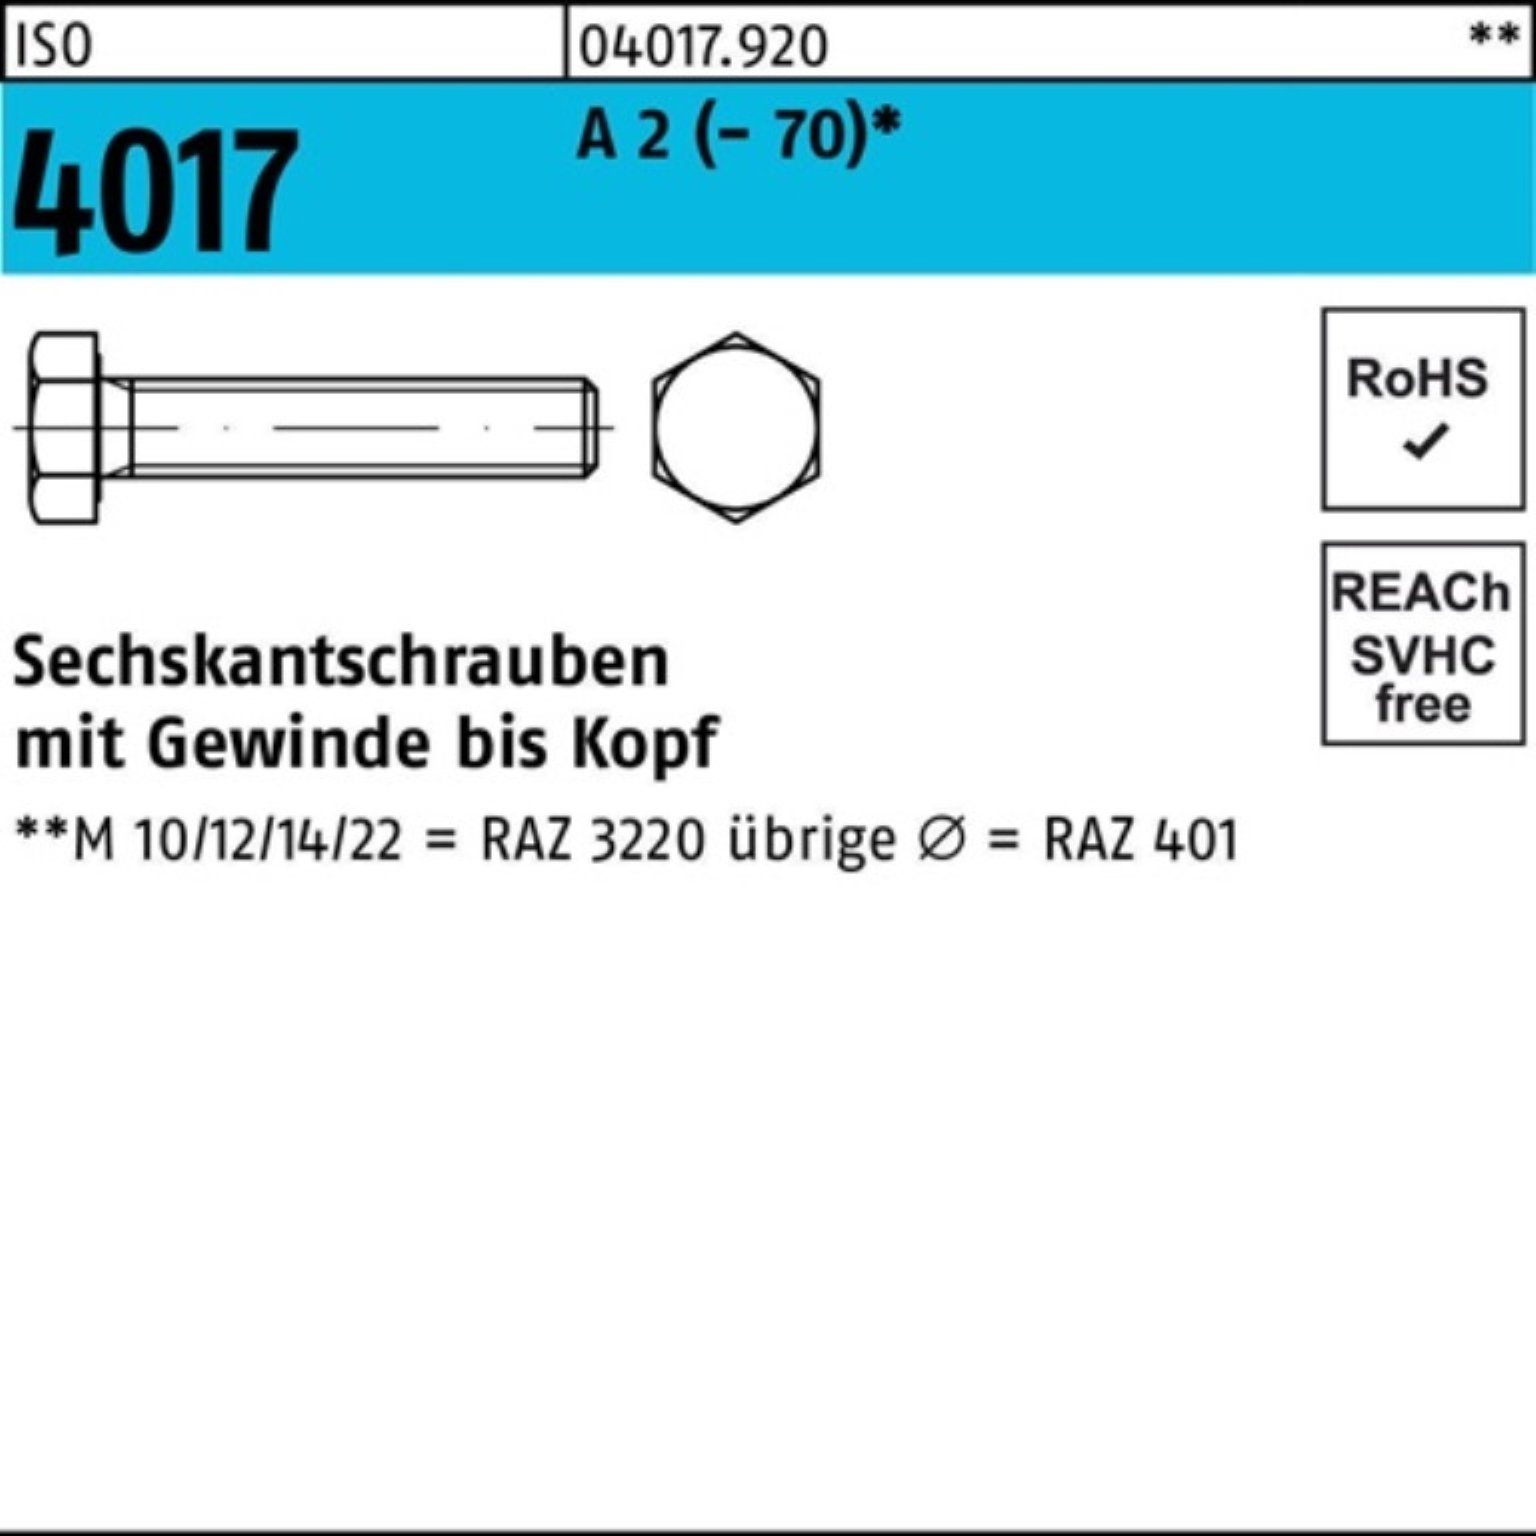 Bufab Sechskantschraube 100er Pack Sechskantschraube ISO 4017 VG M6x 16 A 2 (70) 100 Stück